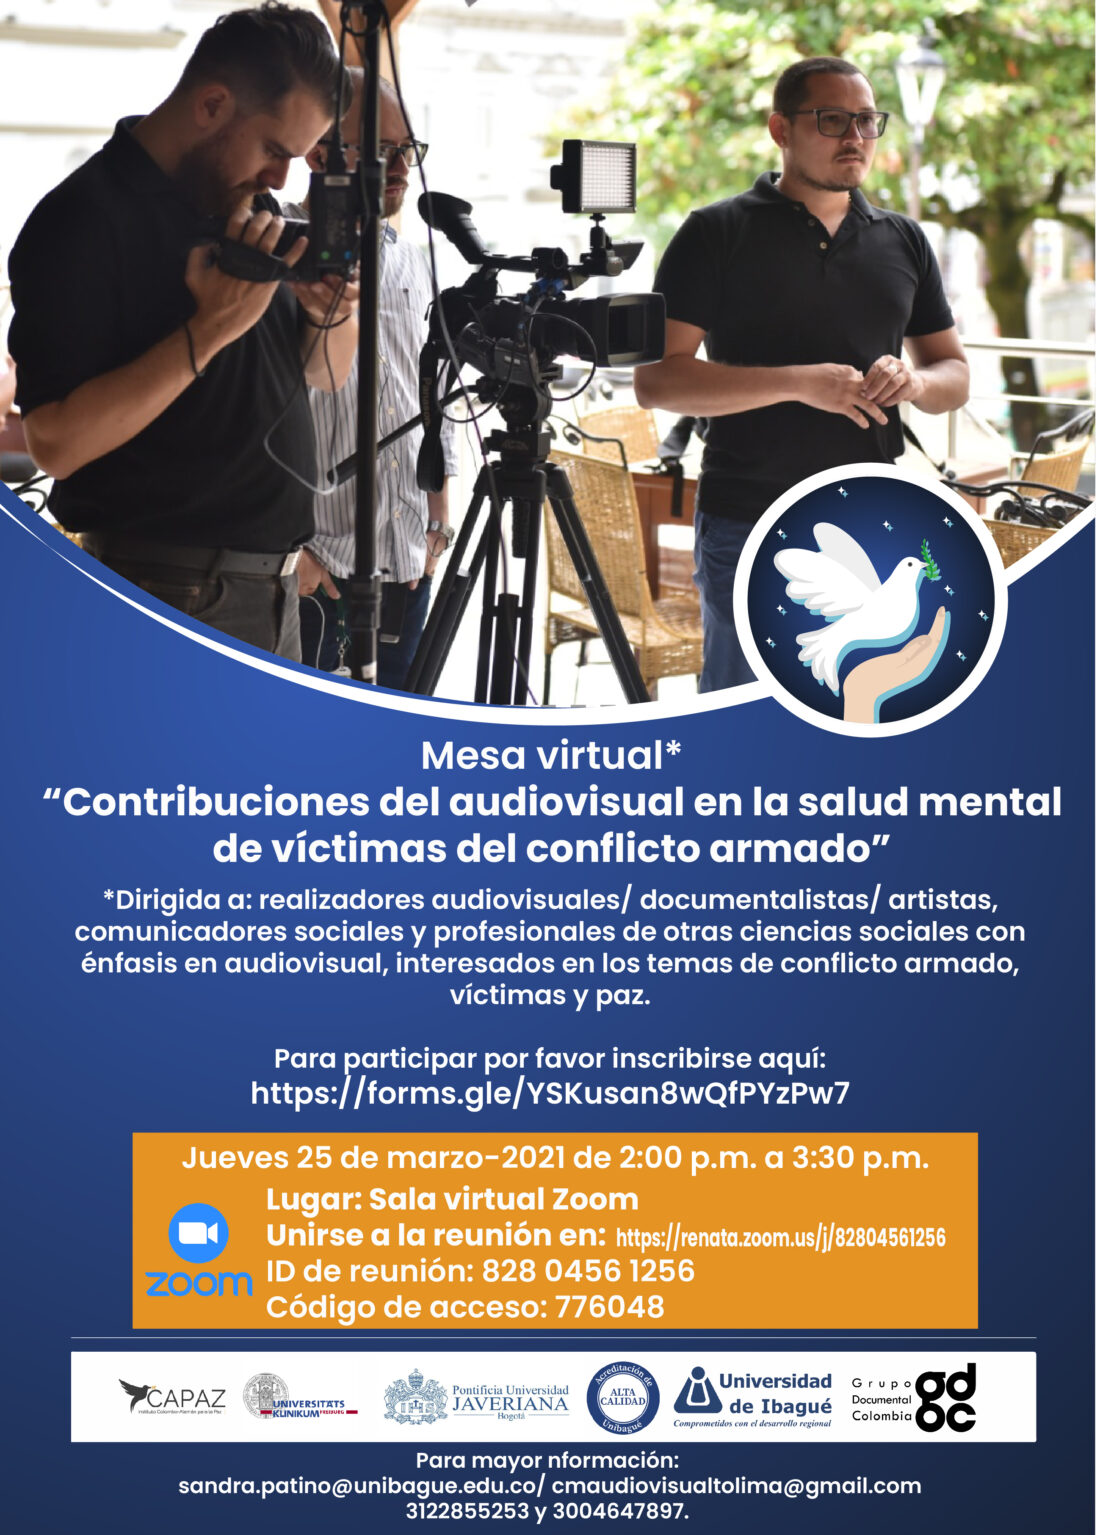 La mesa virtual se realizará con el objetivo de ndentificar experiencias y aportes posibles desde el audiovisual a la salud psicoemocional de las víctimas del conflicto mardo.